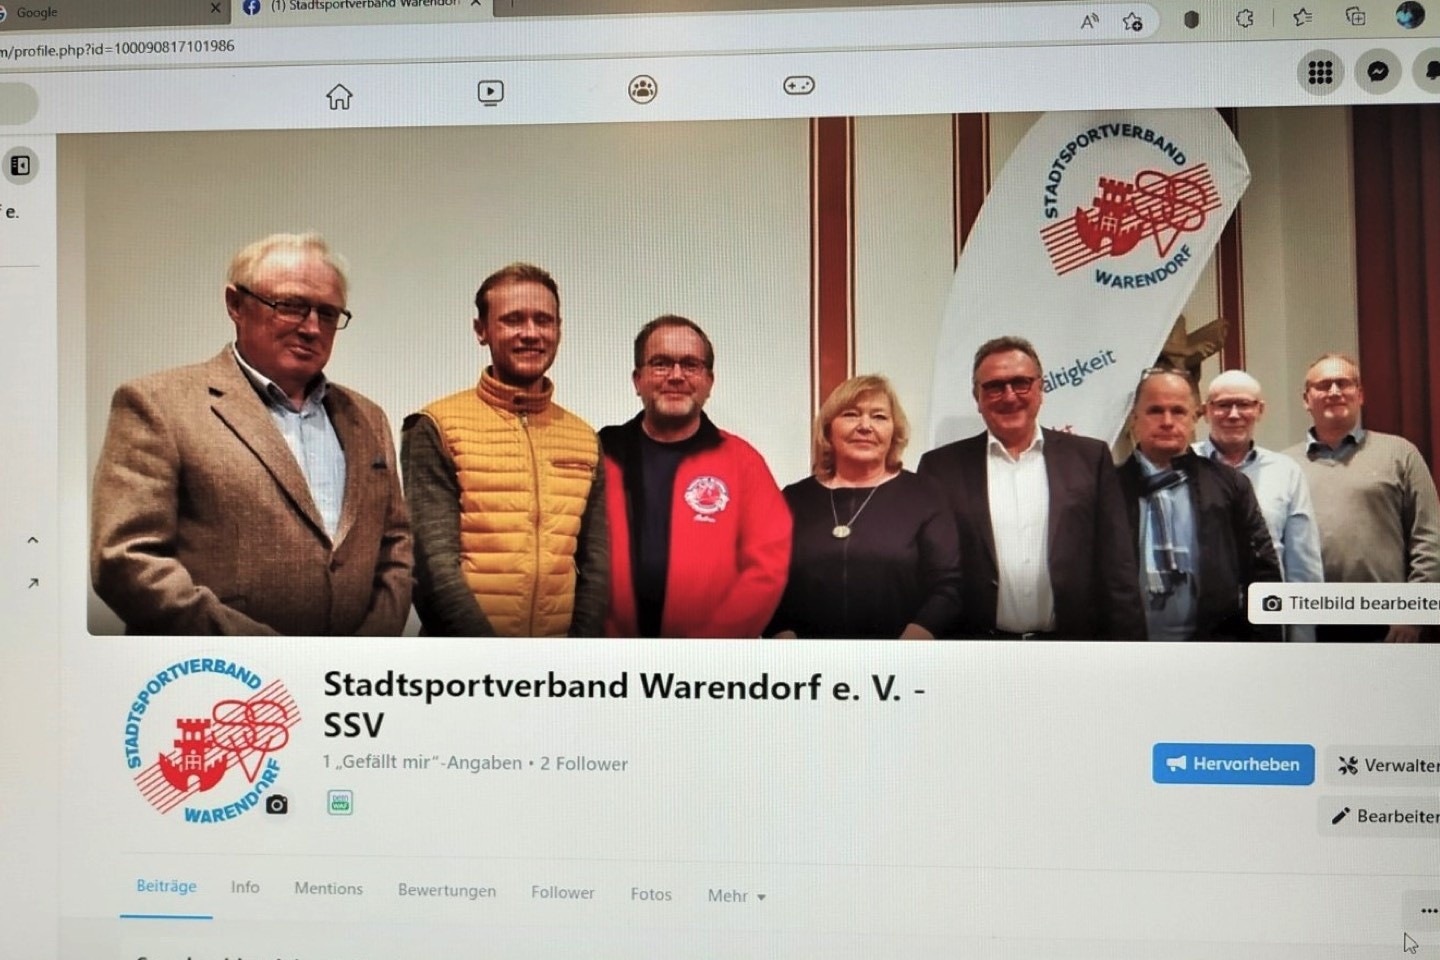 Stadtsportverband Warendorf,Instagram,Facebook,Warendorf,Peter Huerkamp,